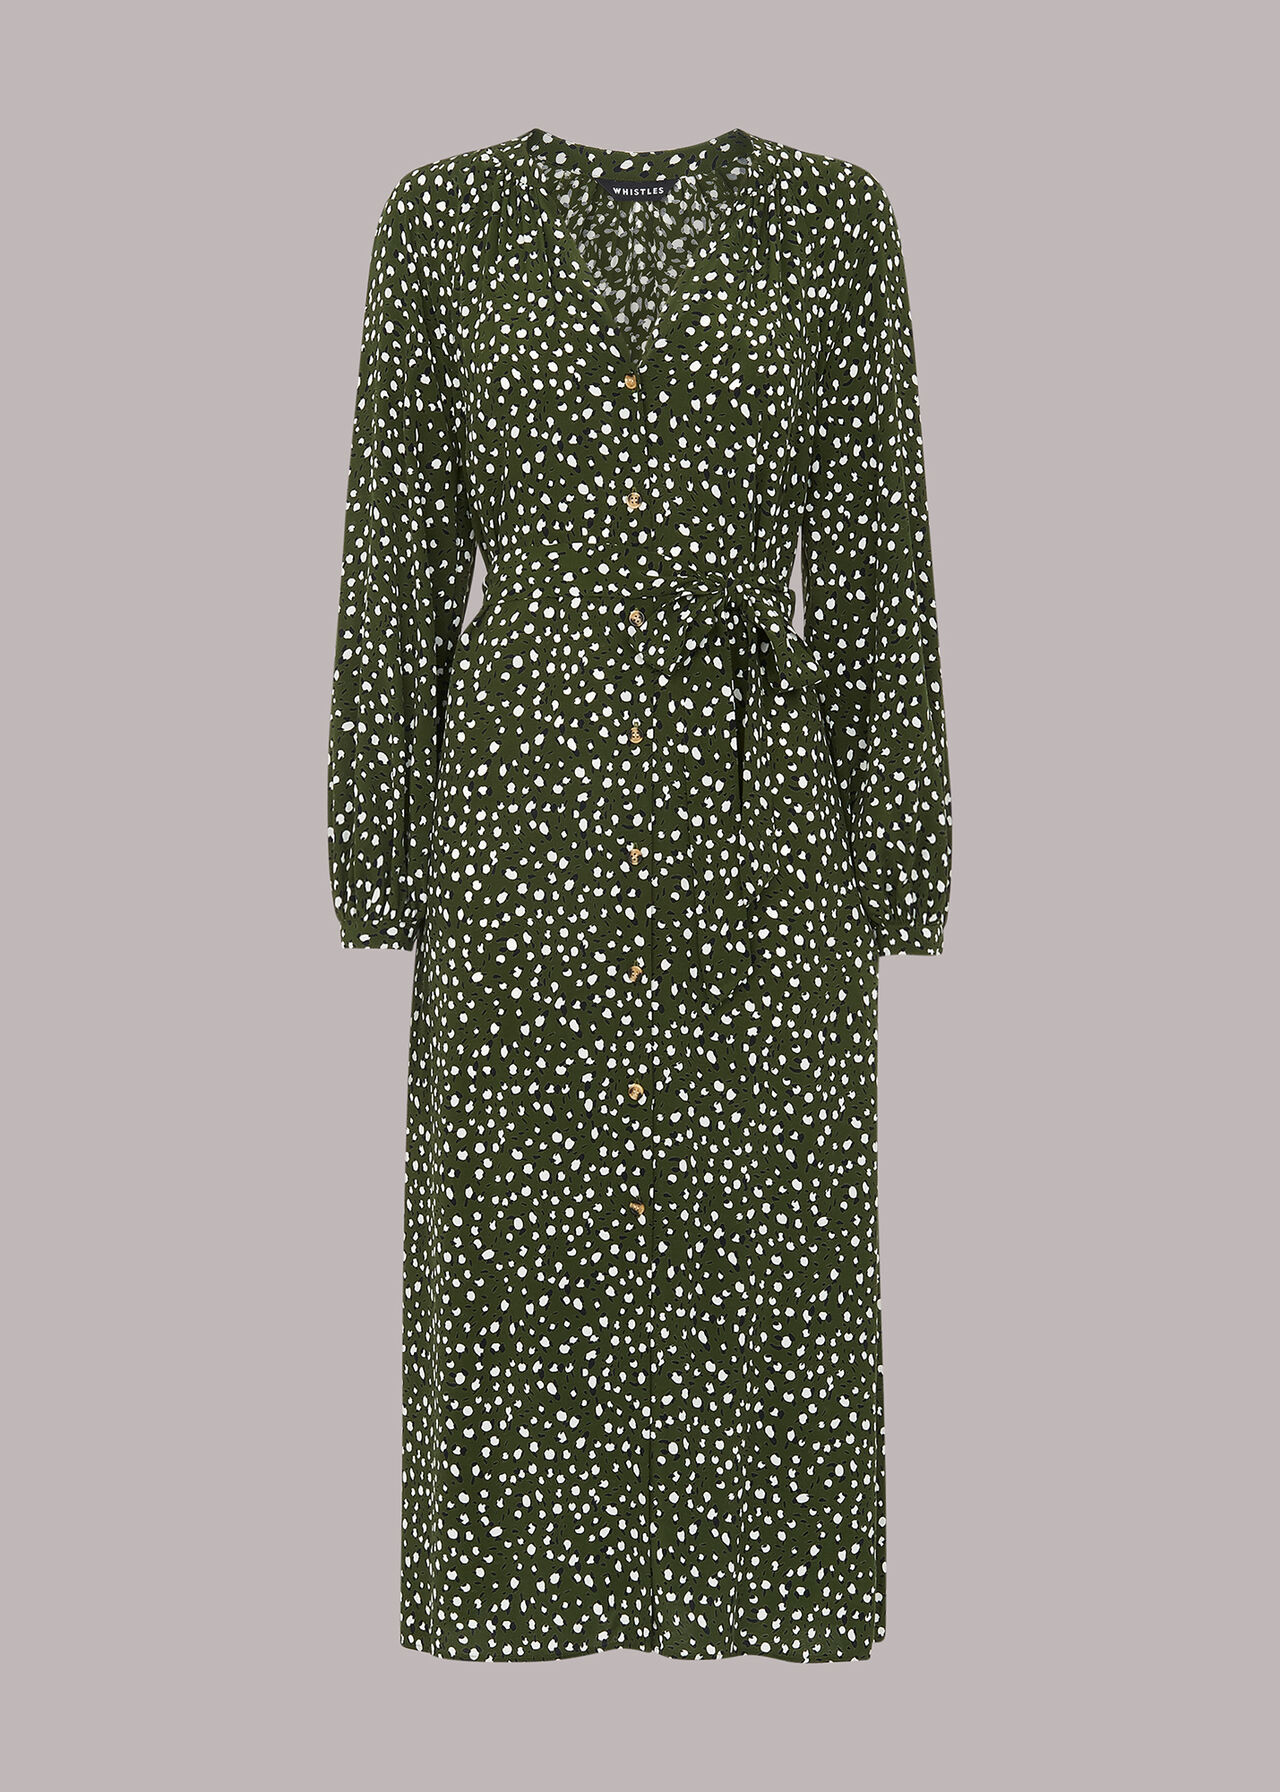 Livi Wild Leopard Midi Dress